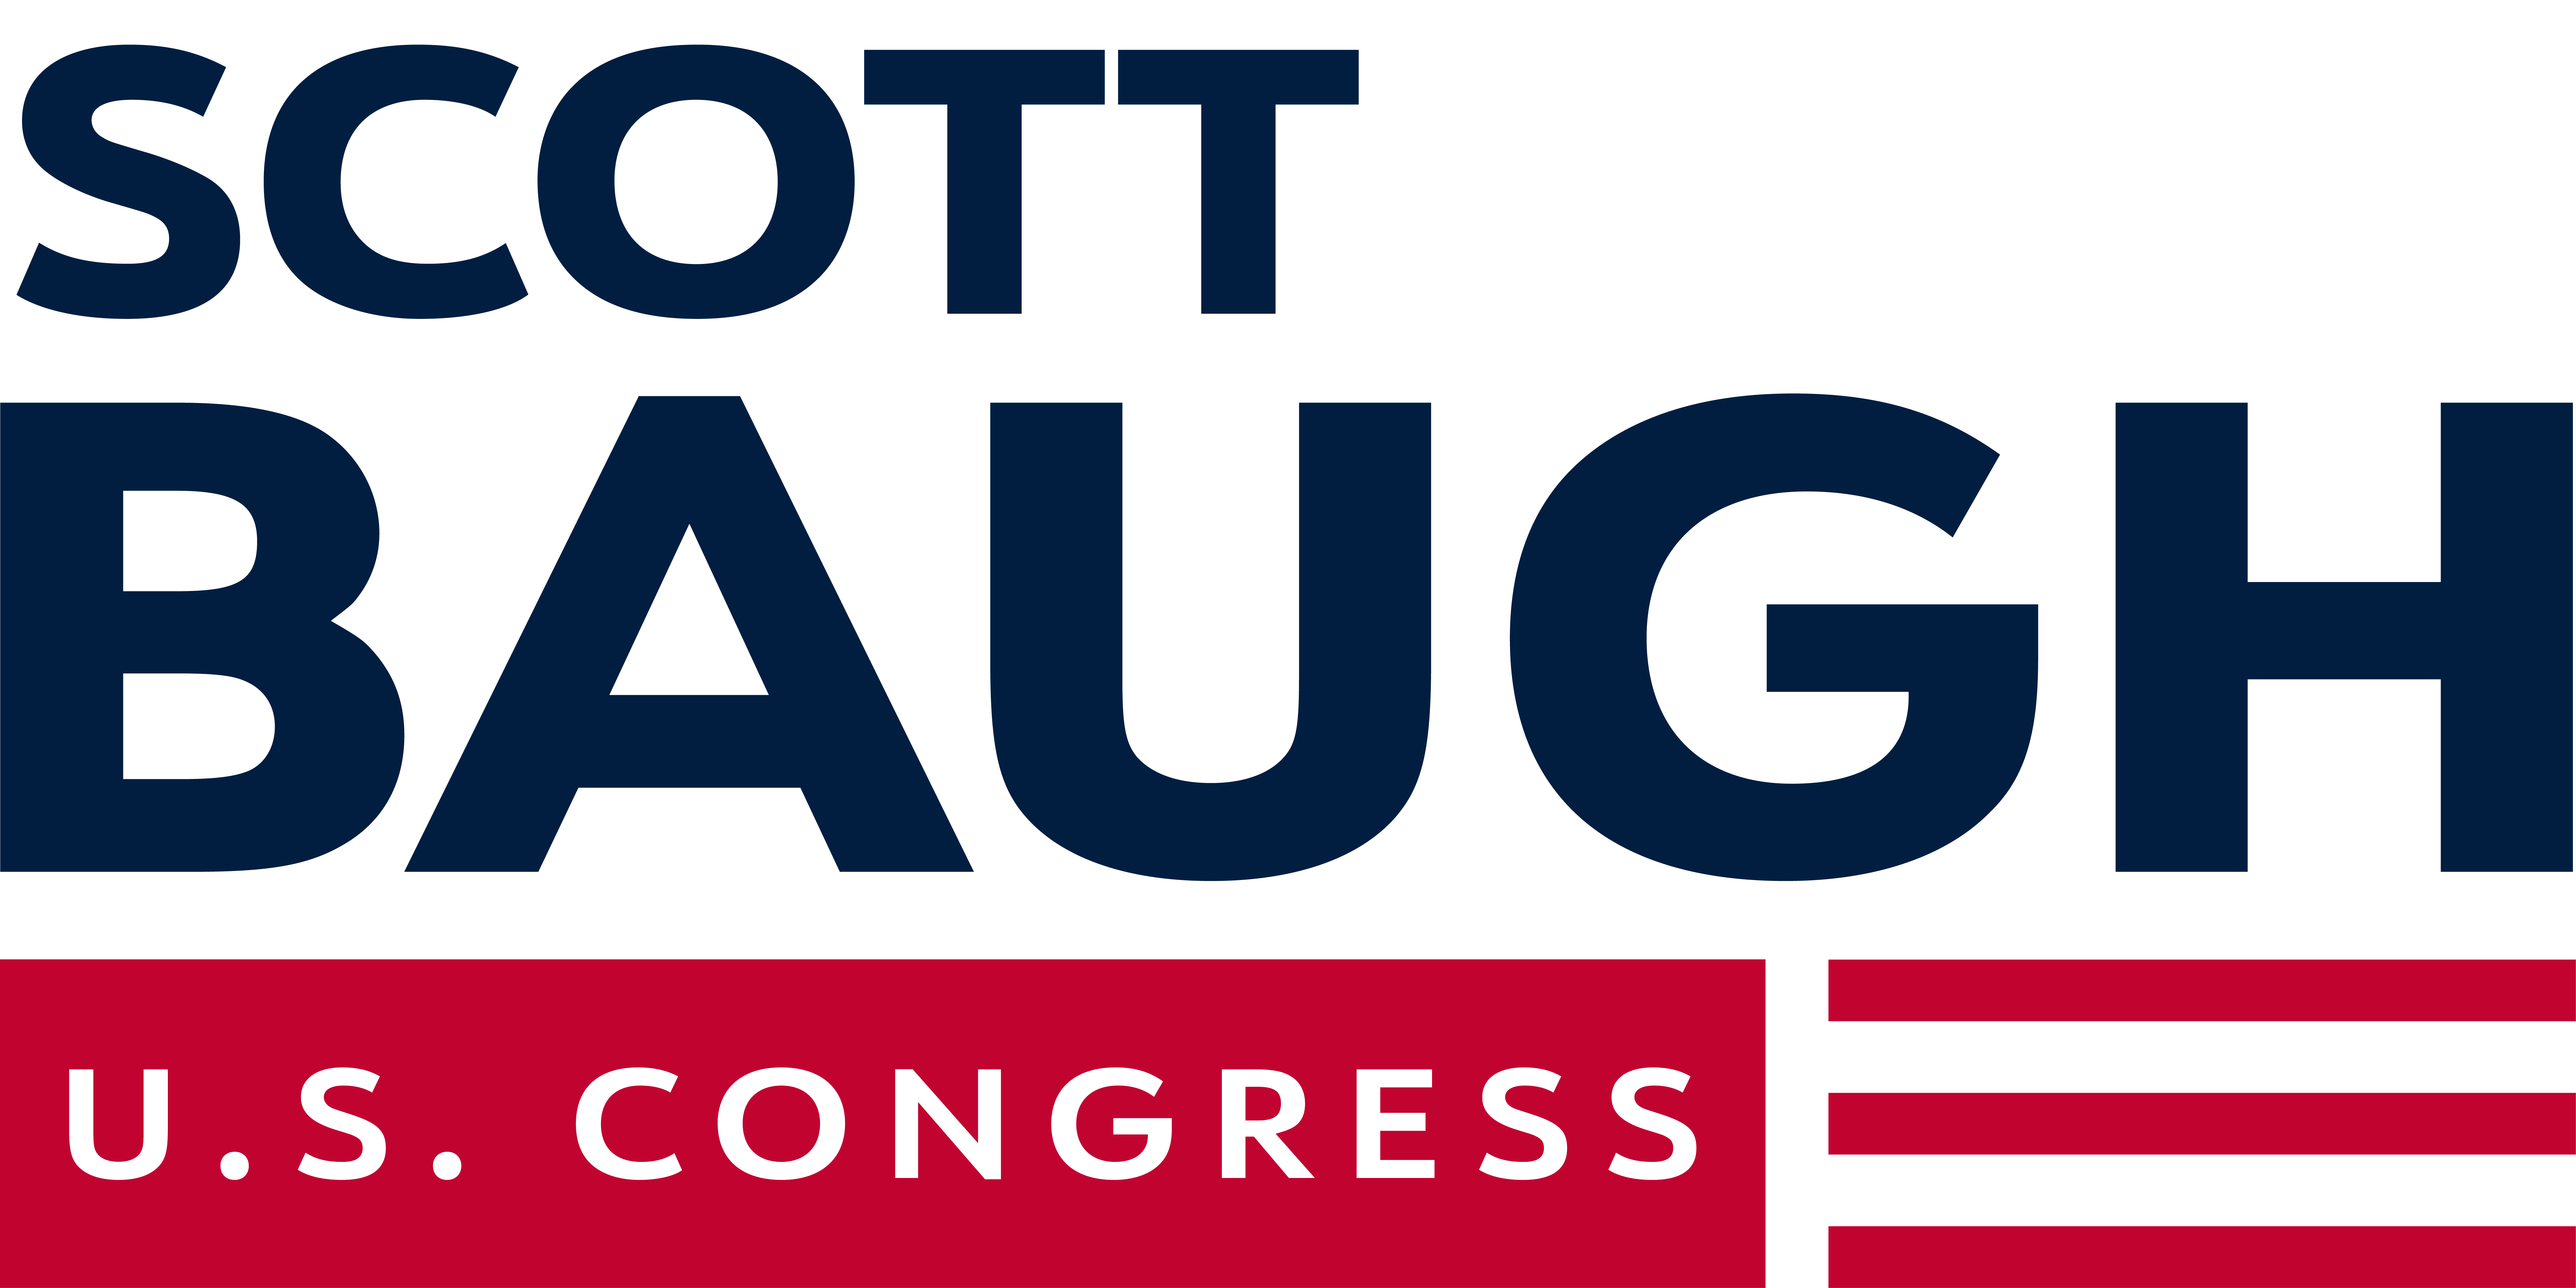 Scott Baugh for Congress